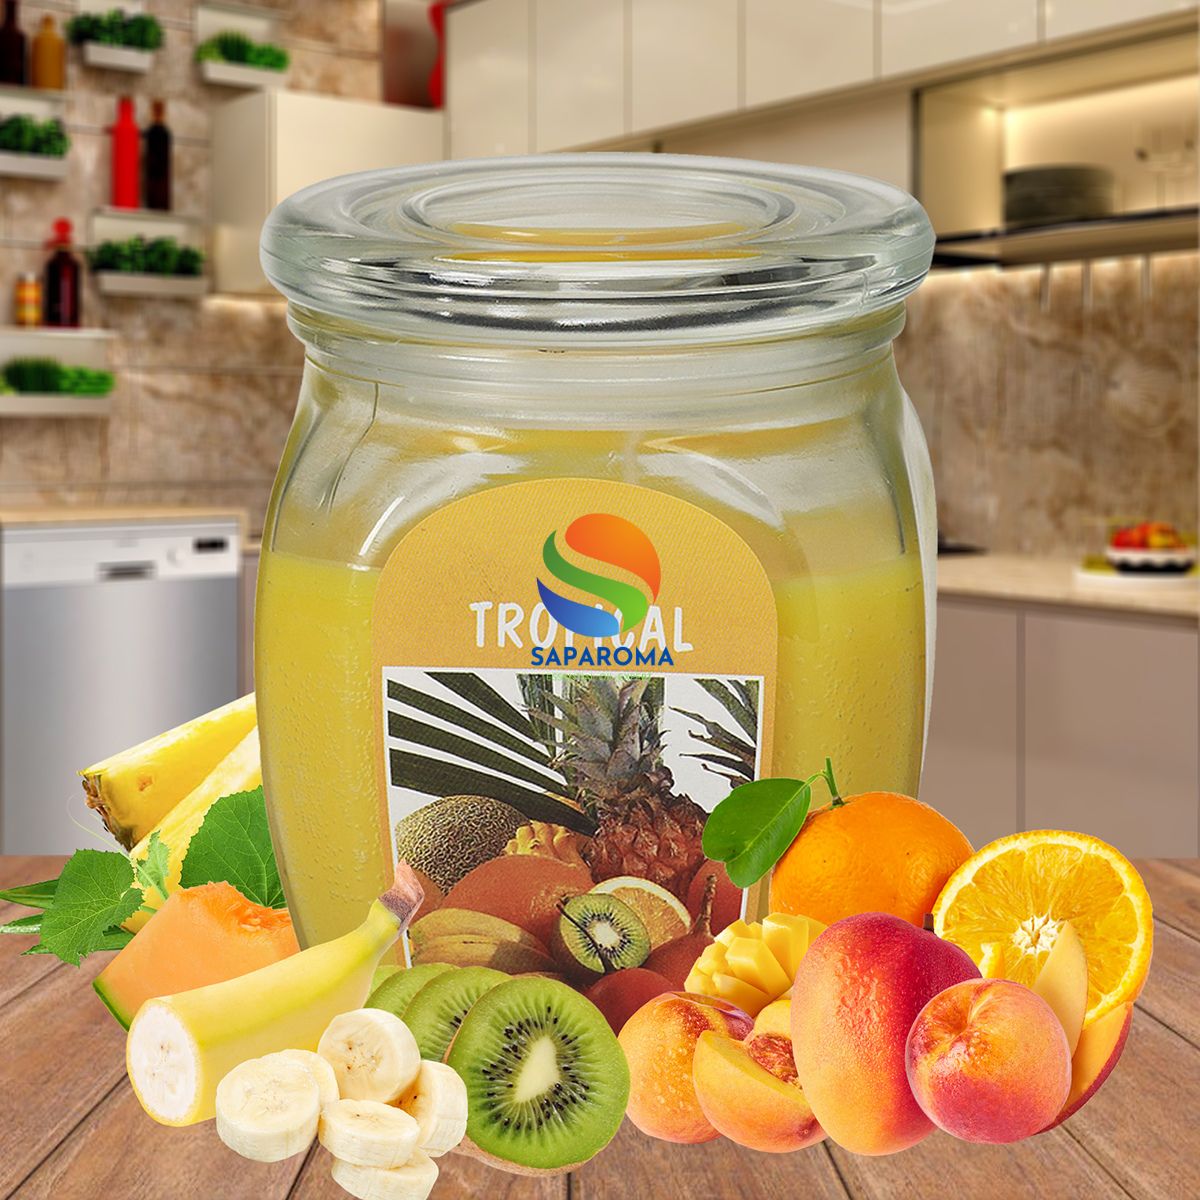 Hũ nến thơm tinh dầu Bolsius Tropical 305g QT024369 - trái cây nhiệt đới, nến trang trí, thơm phòng, thư giãn, Hỗ trợ khử mùi